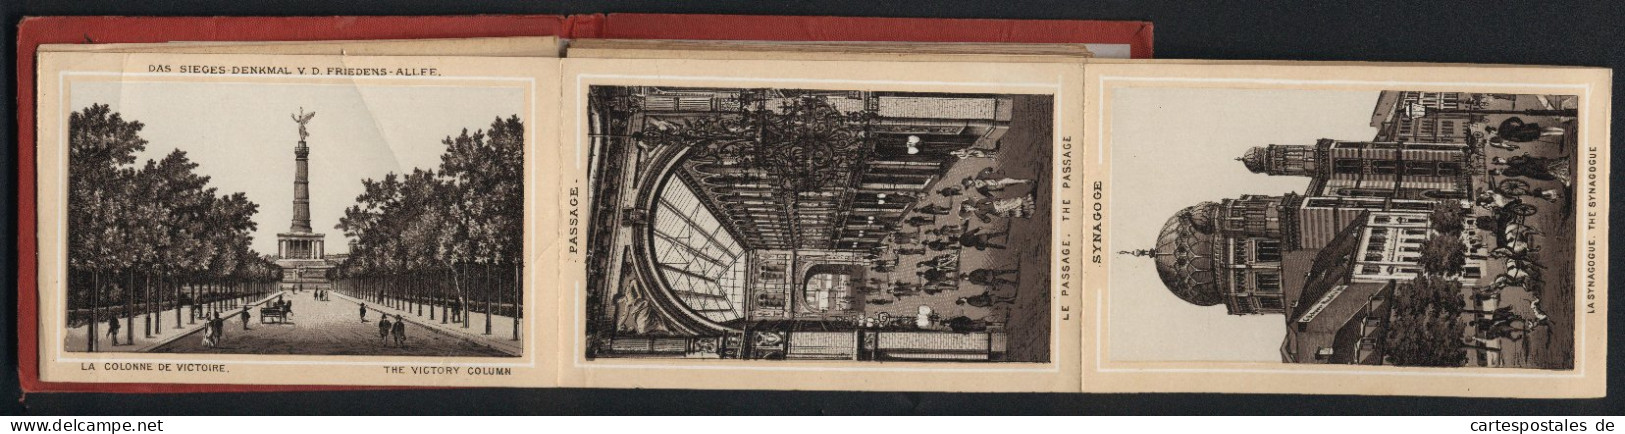 Leporello-Album Berlin Mit 25 Lithographie-Ansichten, Synagoge, Mausoleum, Flora Charlottenburg, Bahnhof Friedrichstra  - Lithografieën